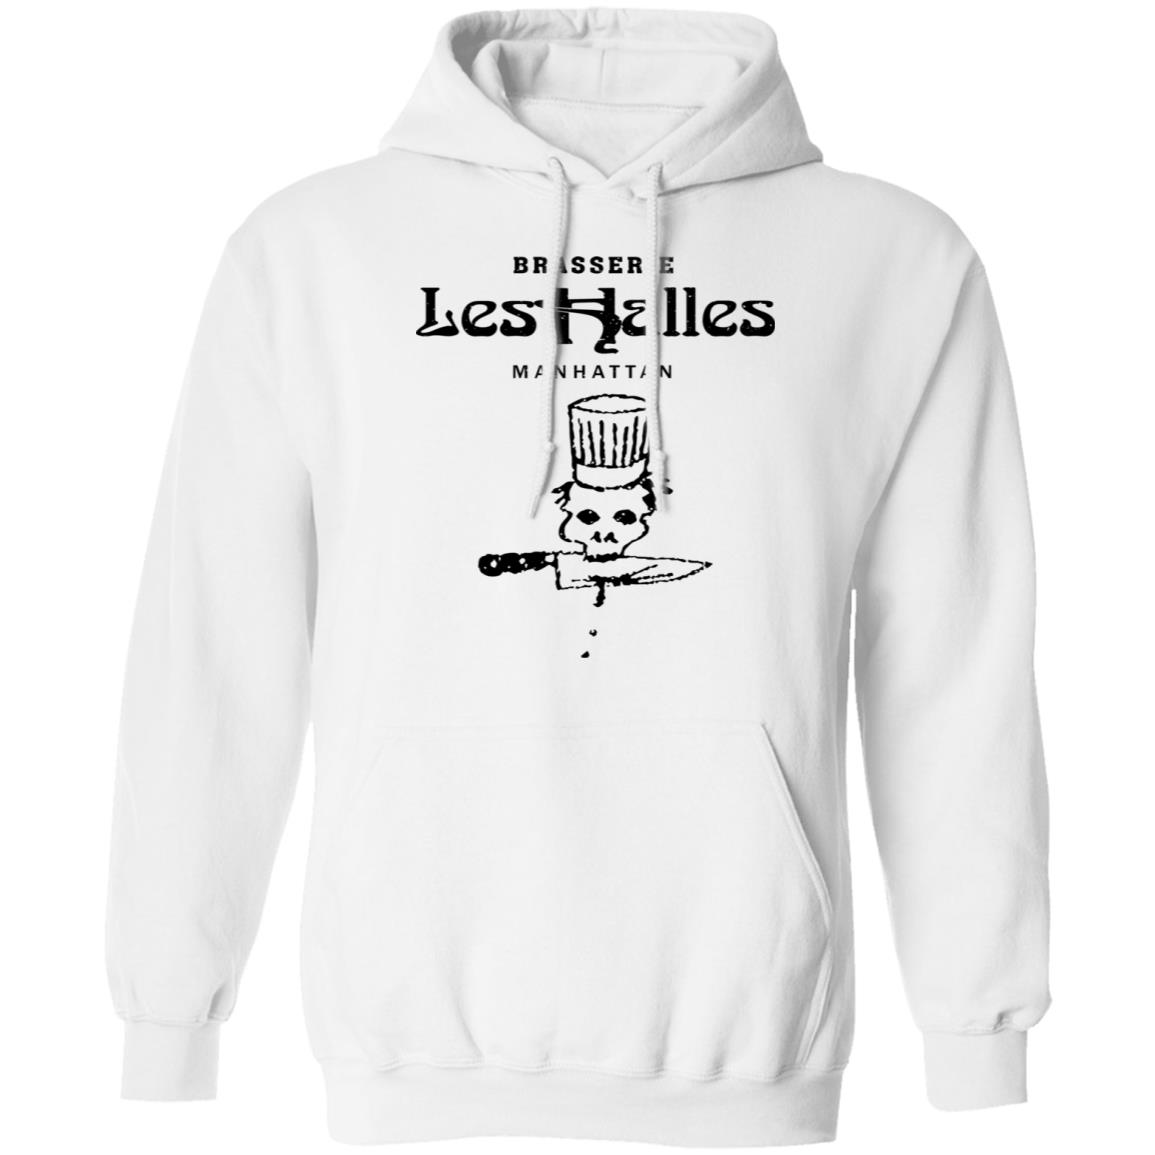 Brasserie Les Halles Manhattan shirt, hoodie, sweater, longsleeve